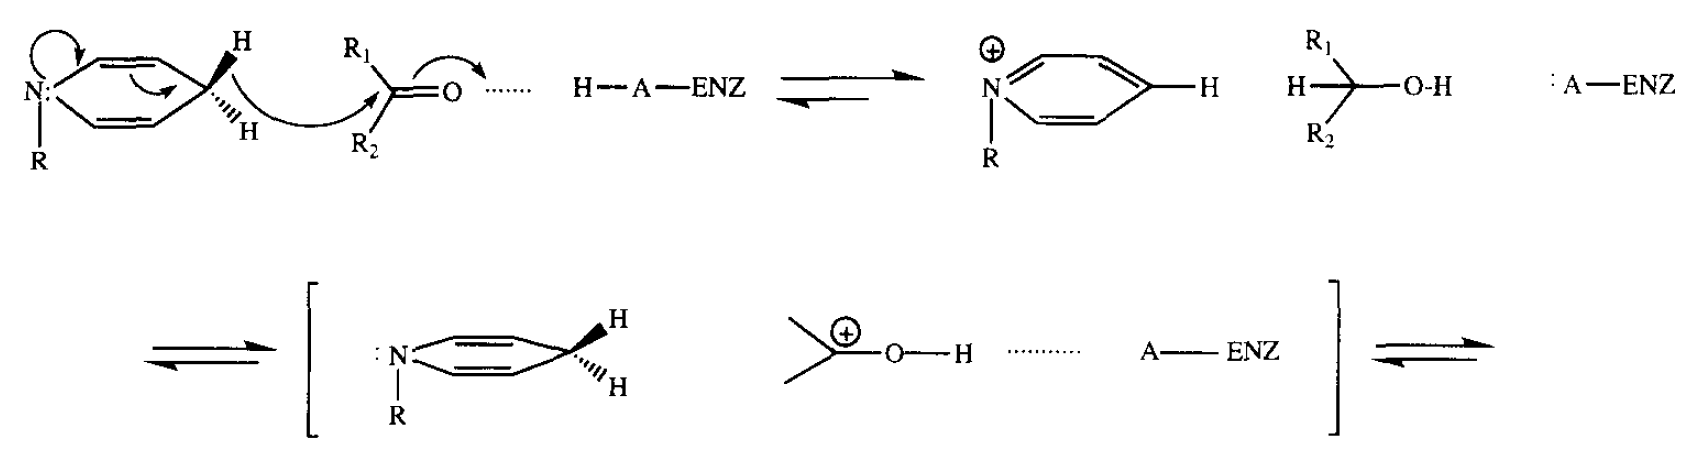 3α-Hydroxysteroid Dehydrogenase